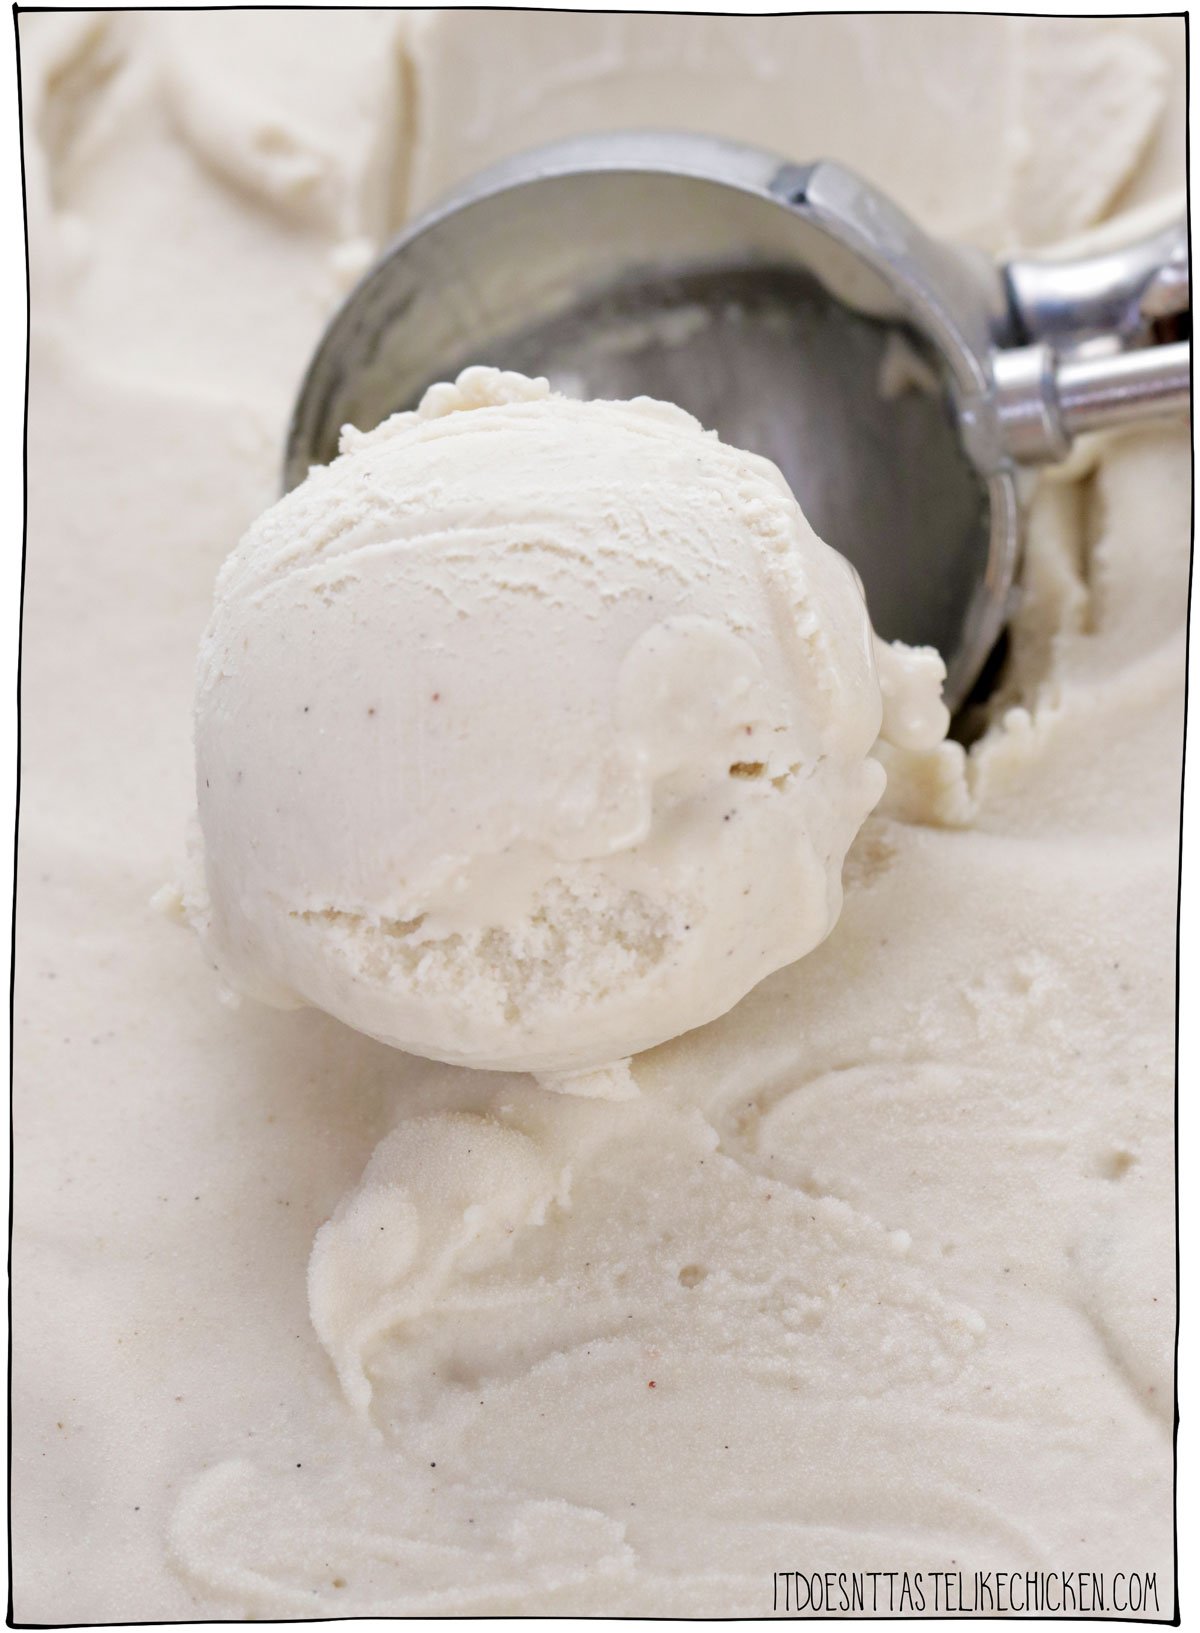 Seulement 4 ingrédients pour faire la MEILLEURE glace à la vanille vegan !  Cette recette de crème glacée maison est facile à faire, super riche et crémeuse - c'est la meilleure glace que j'ai jamais goûtée, végétalienne ou non !  #ça n'a pas le goût du poulet #vegan 